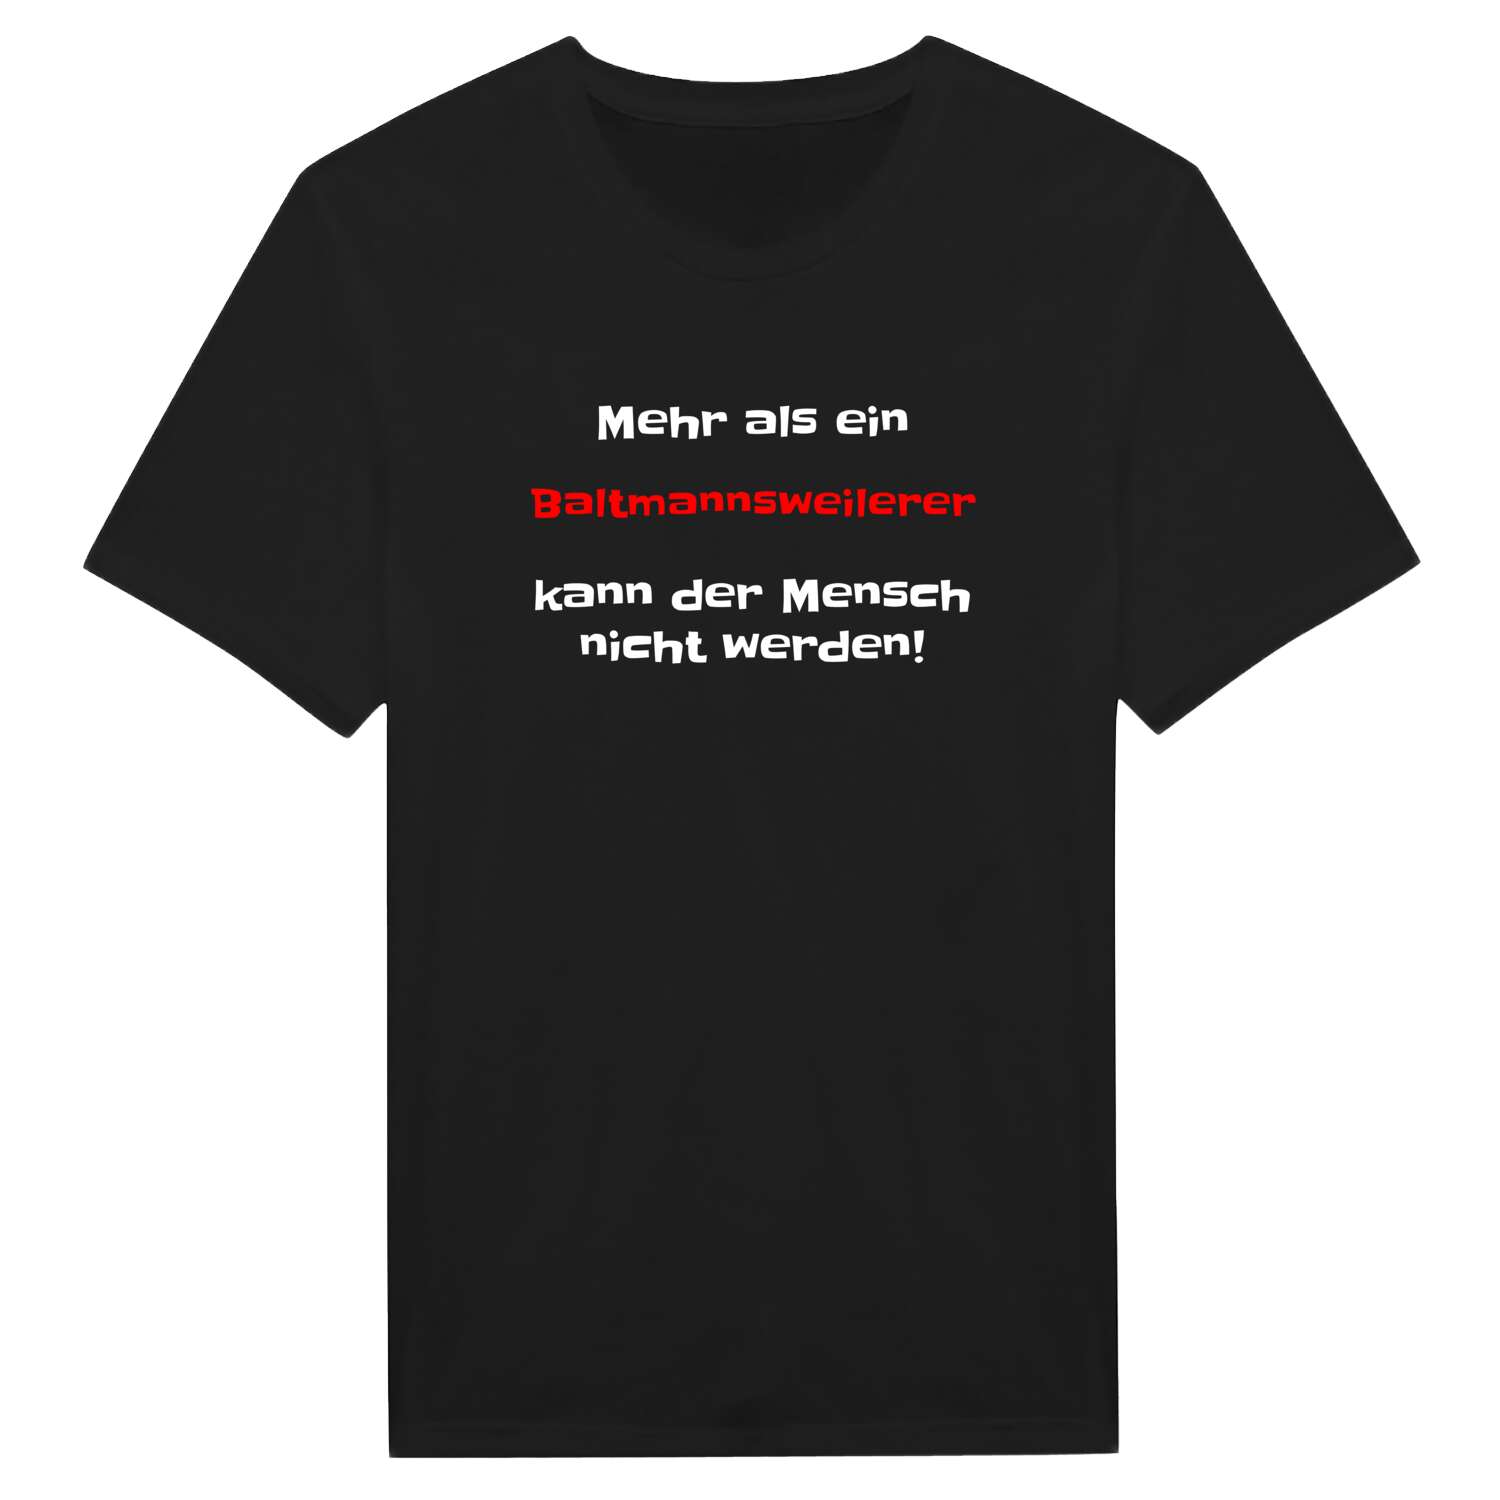 Baltmannsweiler T-Shirt »Mehr als ein«